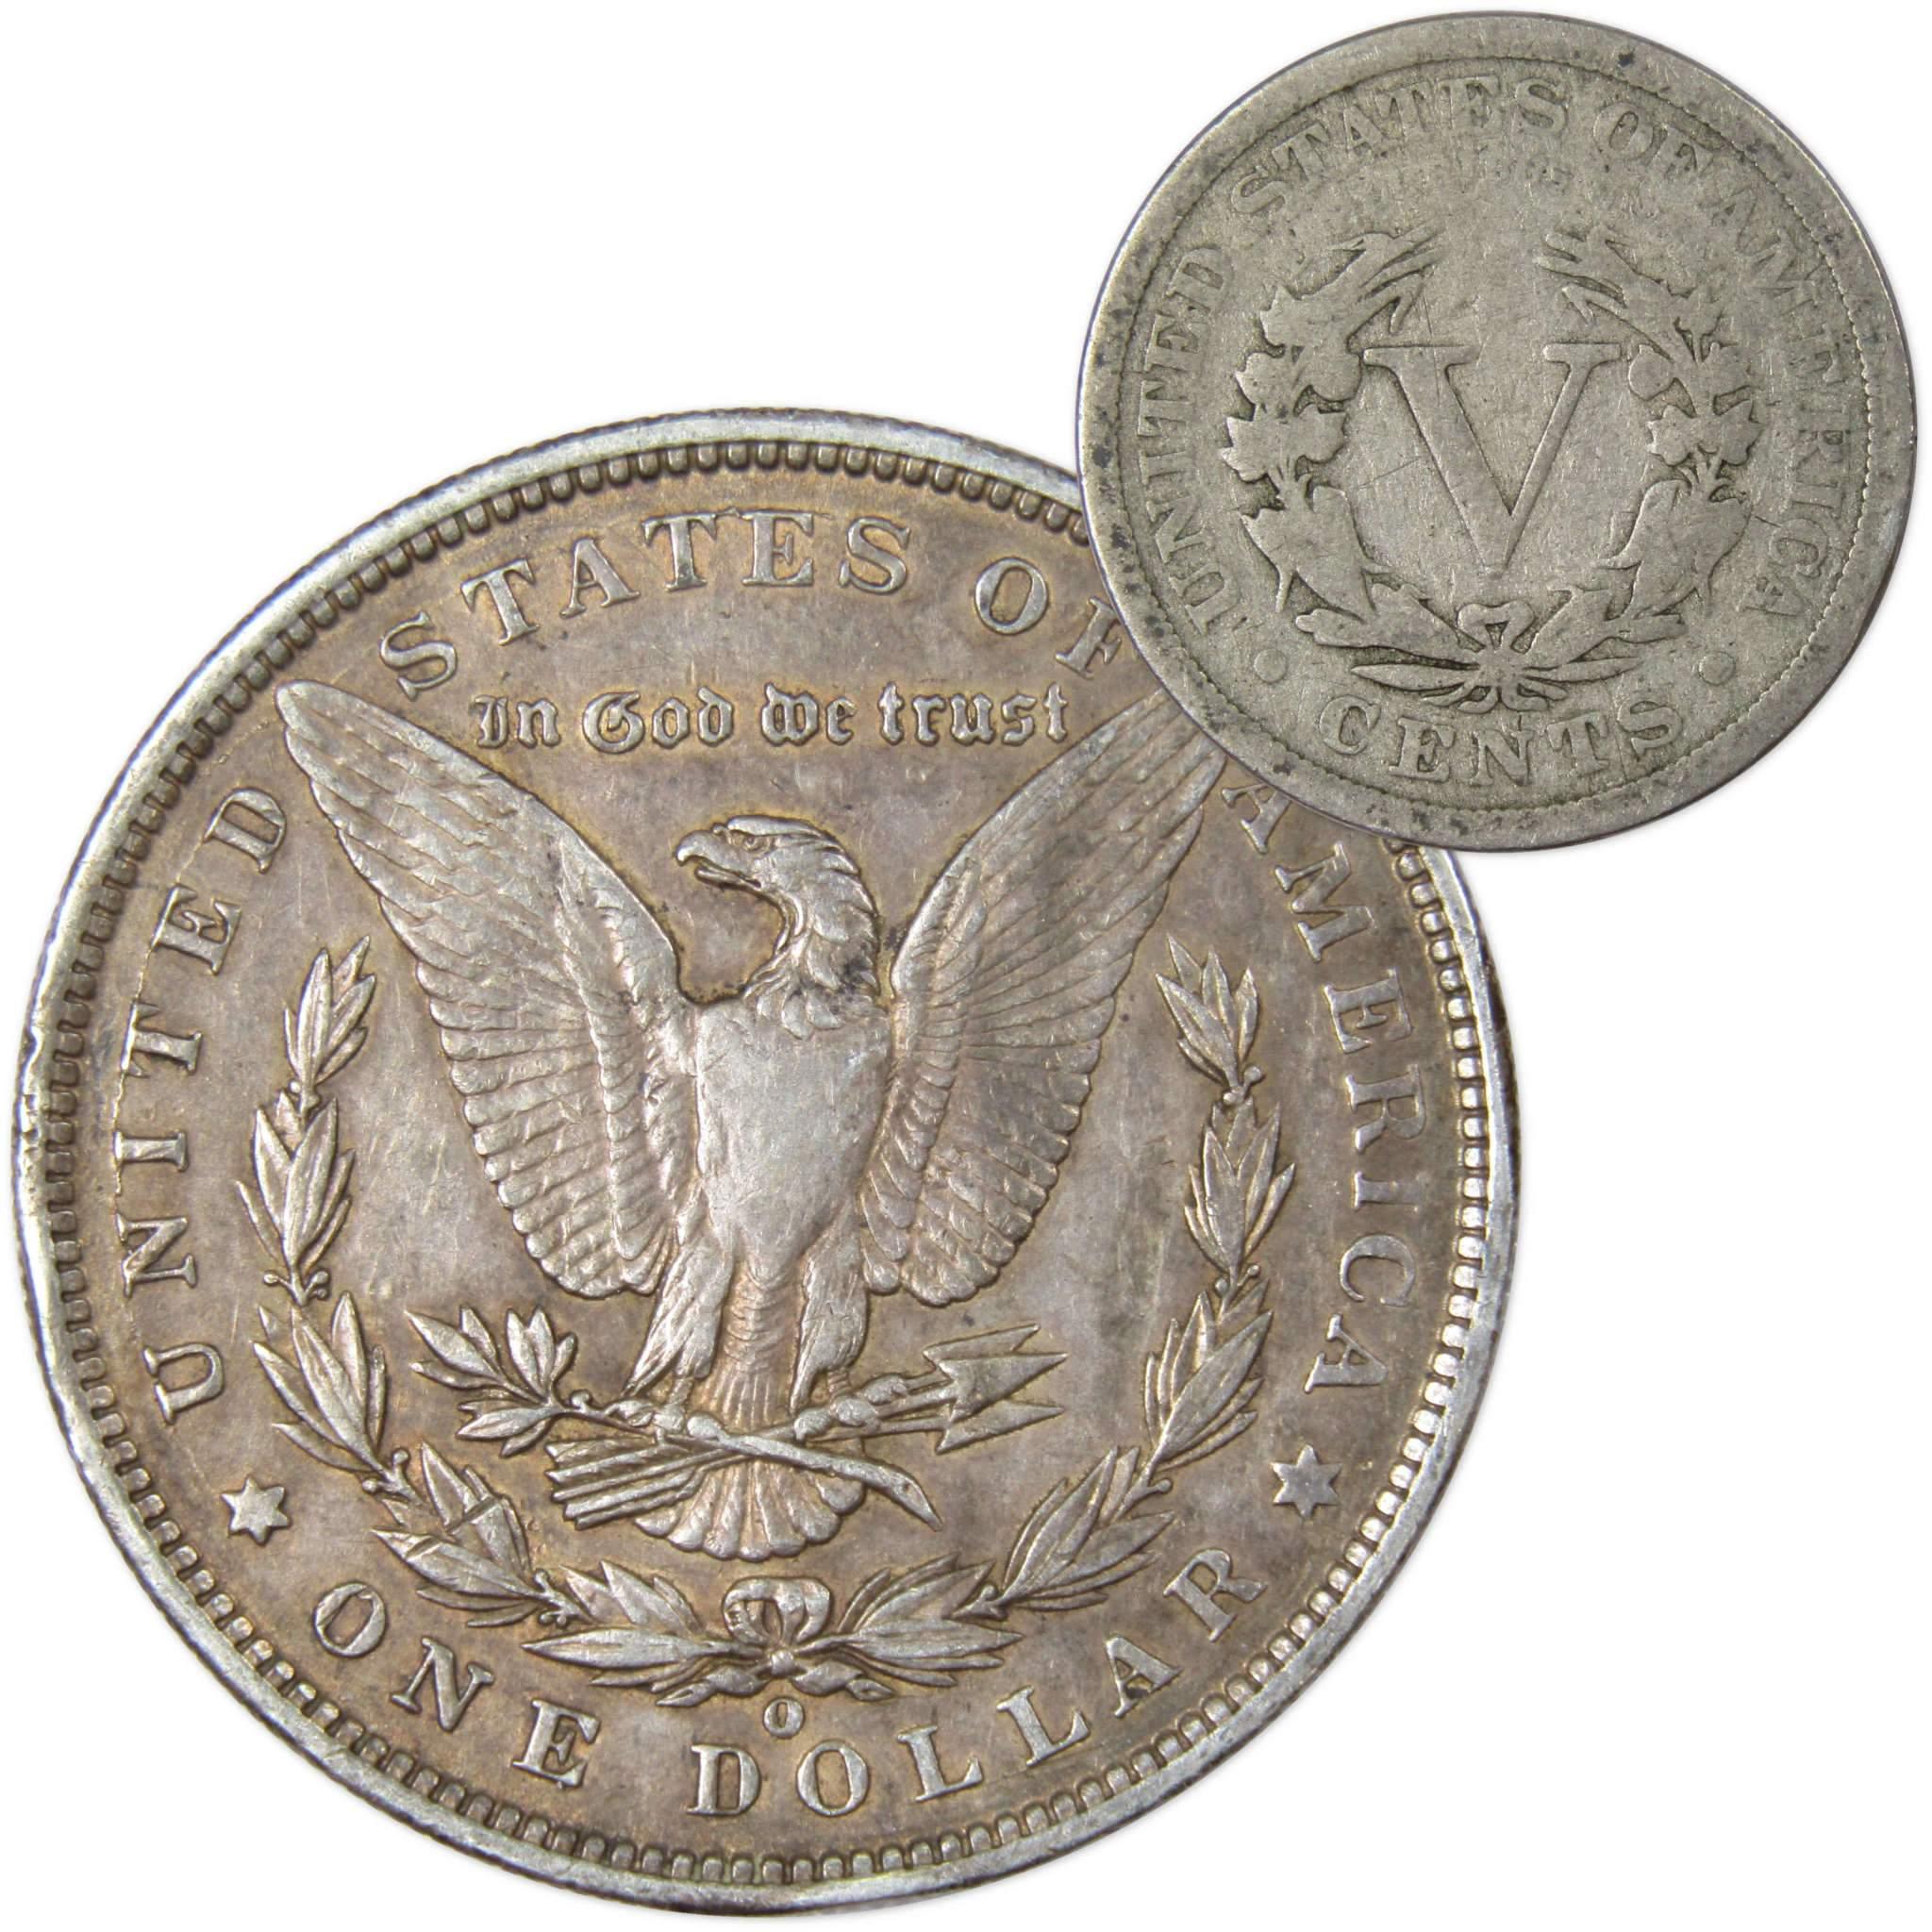 1900 O Morgan Dollar VF Very Fine 90% Silver with 1906 Liberty Nickel G Good - Morgan coin - Morgan silver dollar - Morgan silver dollar for sale - Profile Coins &amp; Collectibles